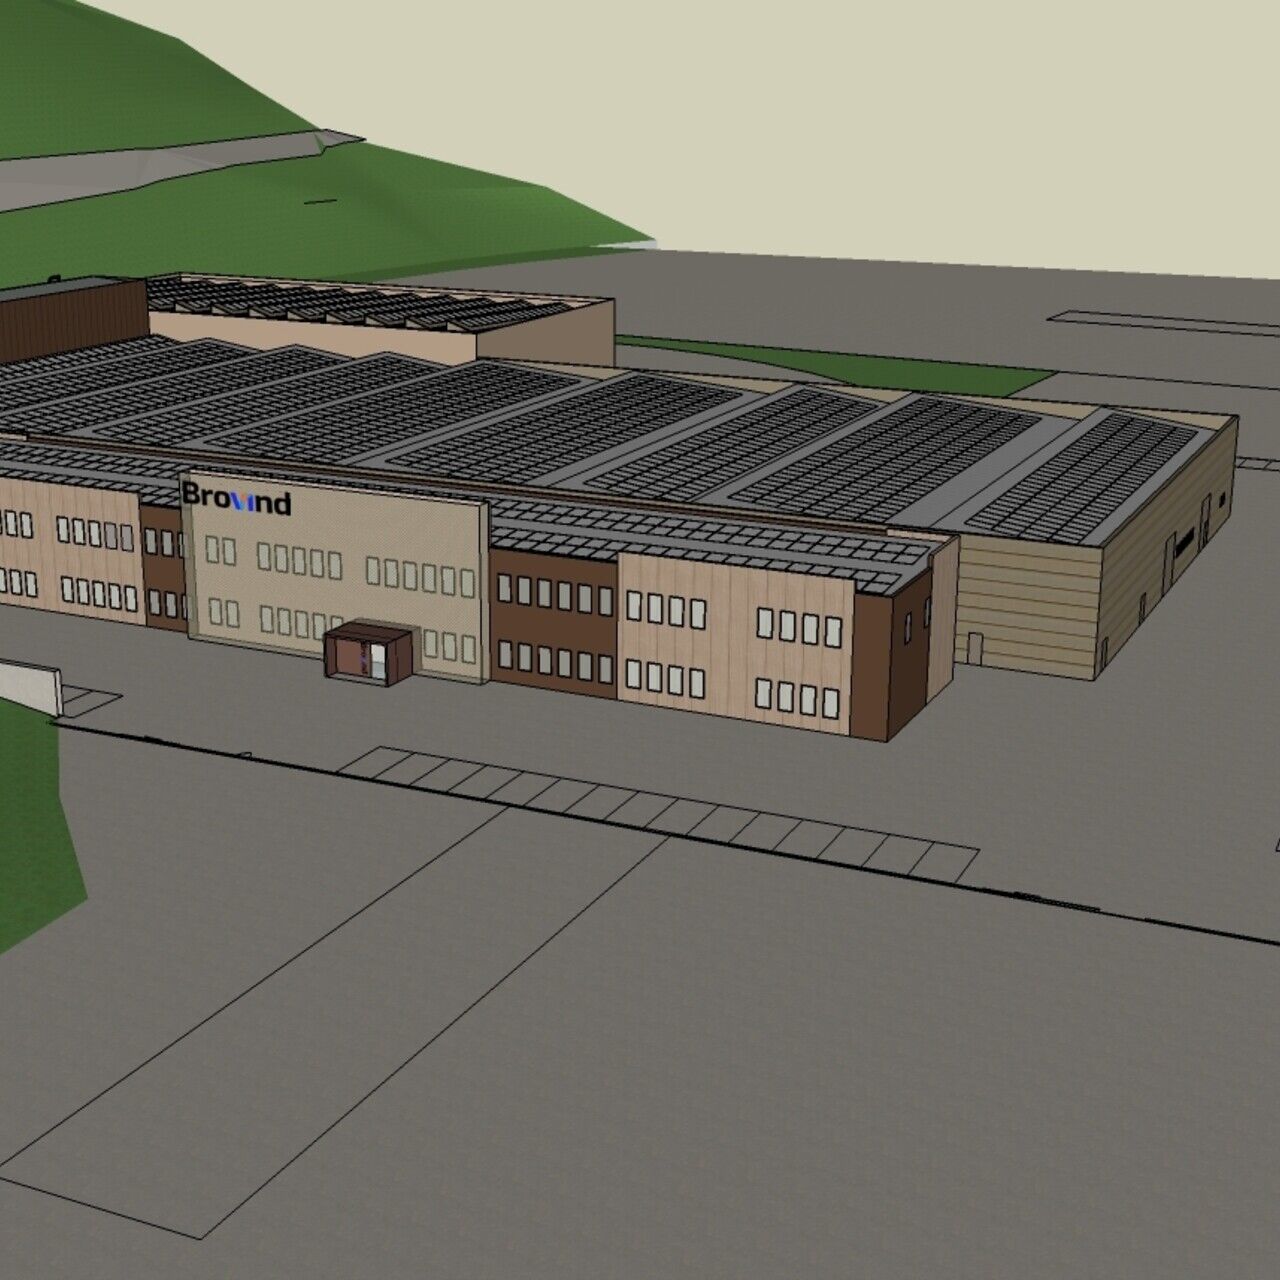 Cortemilia: jak bude přestavěno 33.000 XNUMX mXNUMX bývalého textilního centra v Miroglio